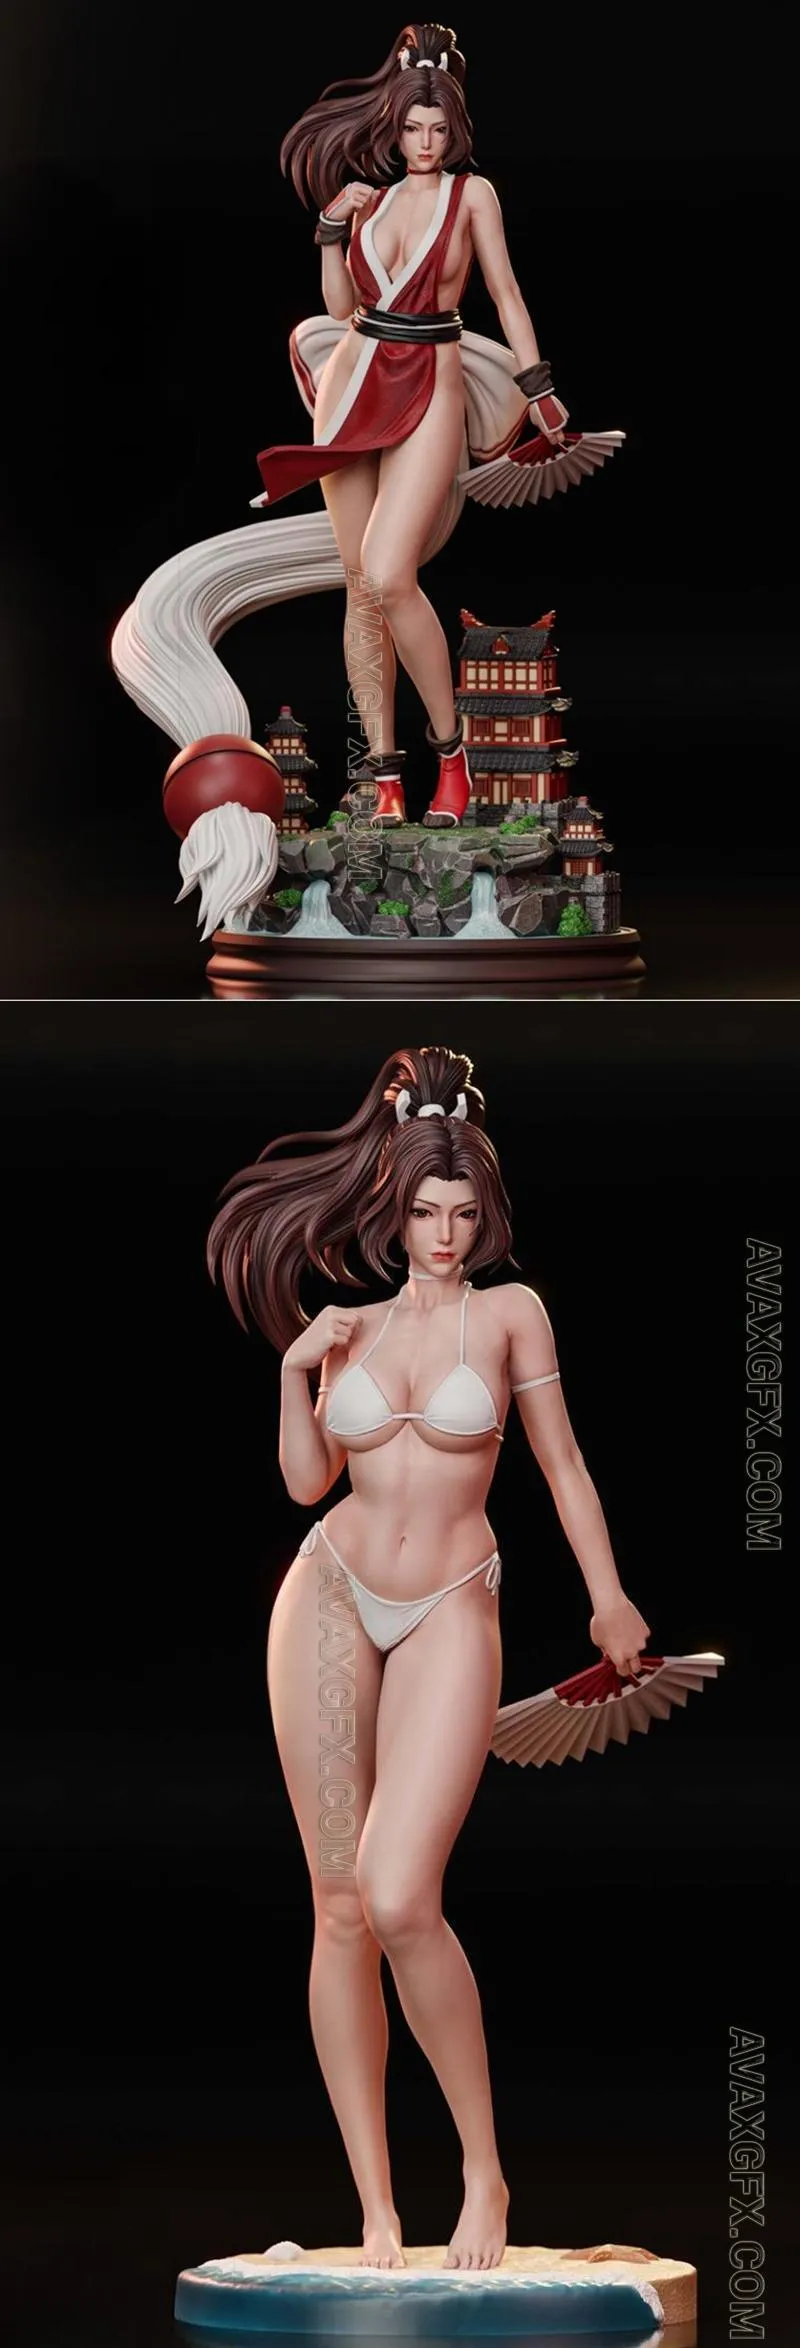 Mai Shiranu Sculpture and Bikini - STL 3D Model